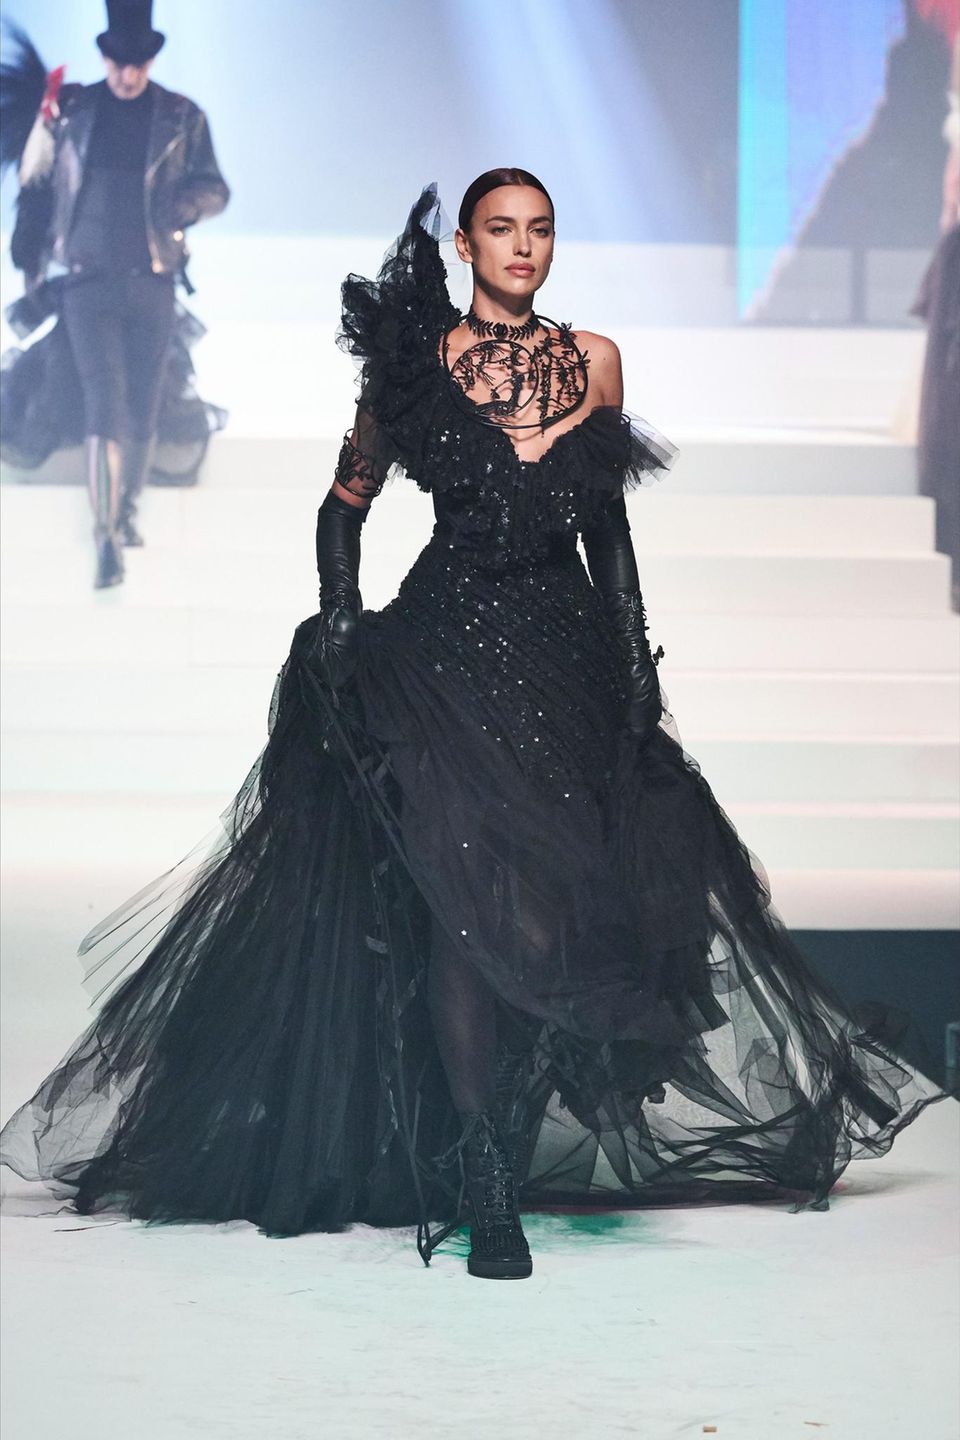 Während der Jean Paul Gaultier Haute Couture Show schreitet sie auch als Model in einer schwarzen Wow-Robe über den Laufsteg. 